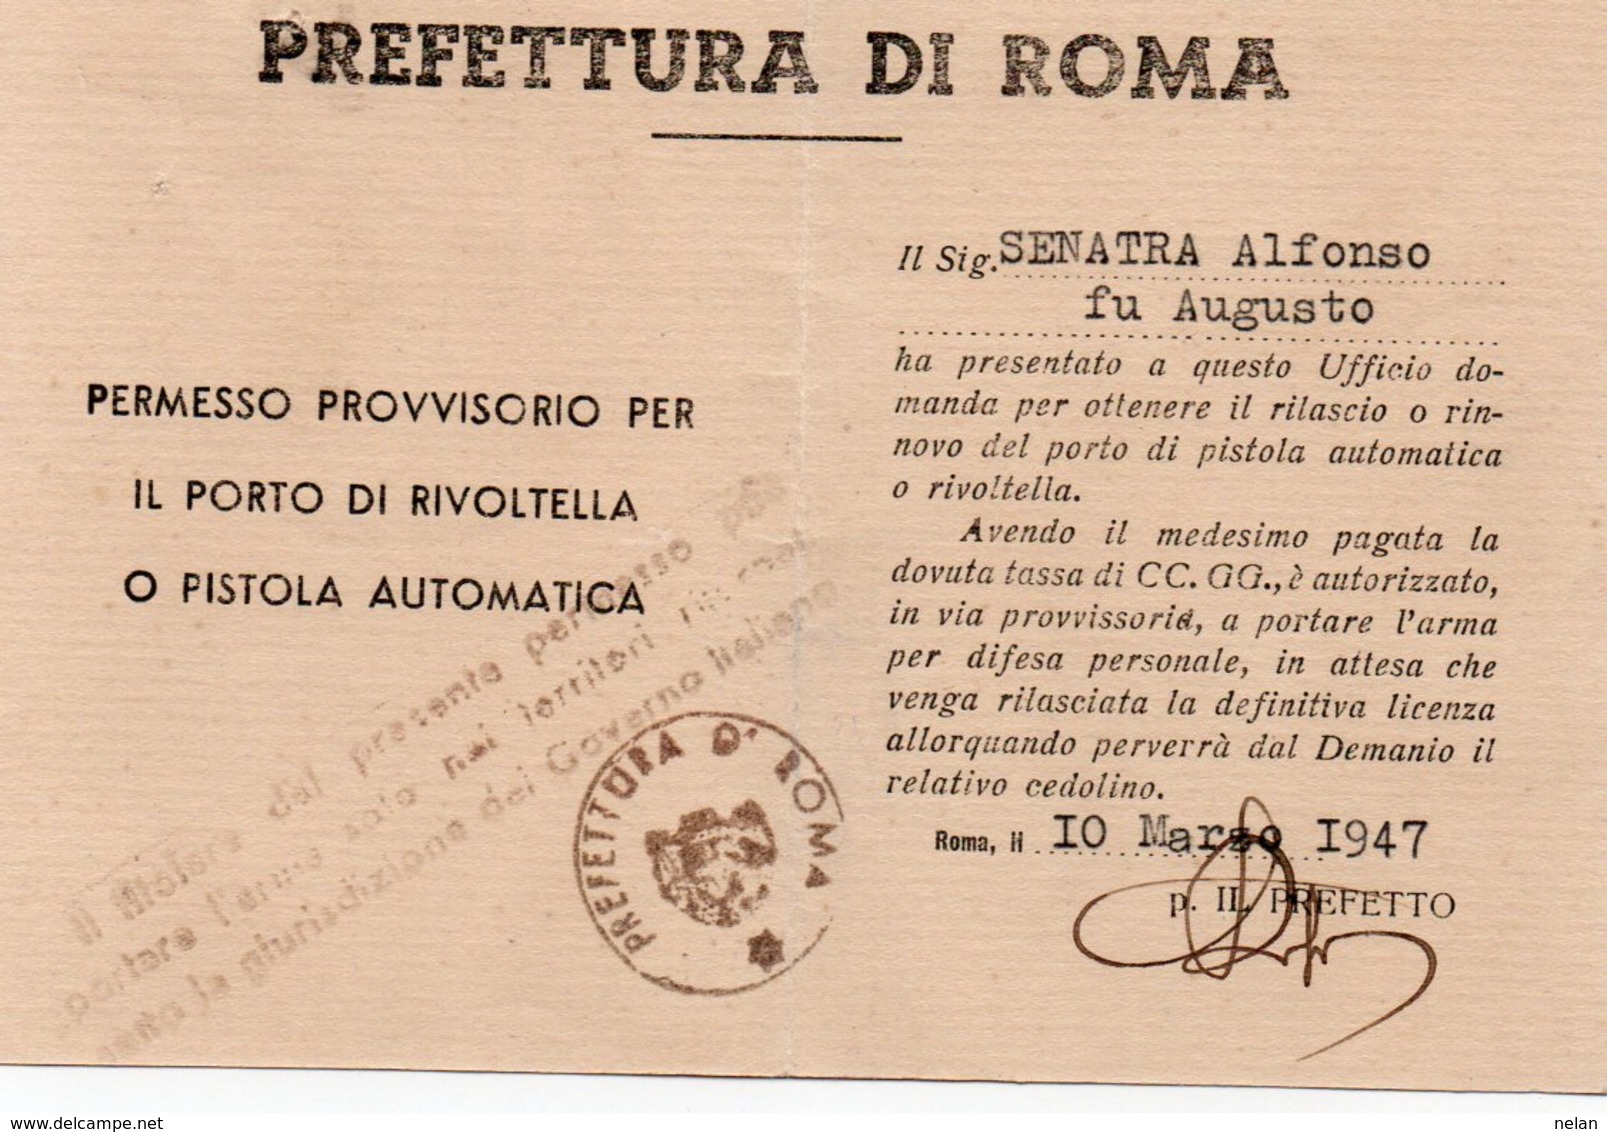 PERMESSO PROVVISORIO PER IL PORTO DI RIVOLTELLA O PISTOLA AUTOMATICA-1947-PREFETTURA DI ROMA - Documenti Storici